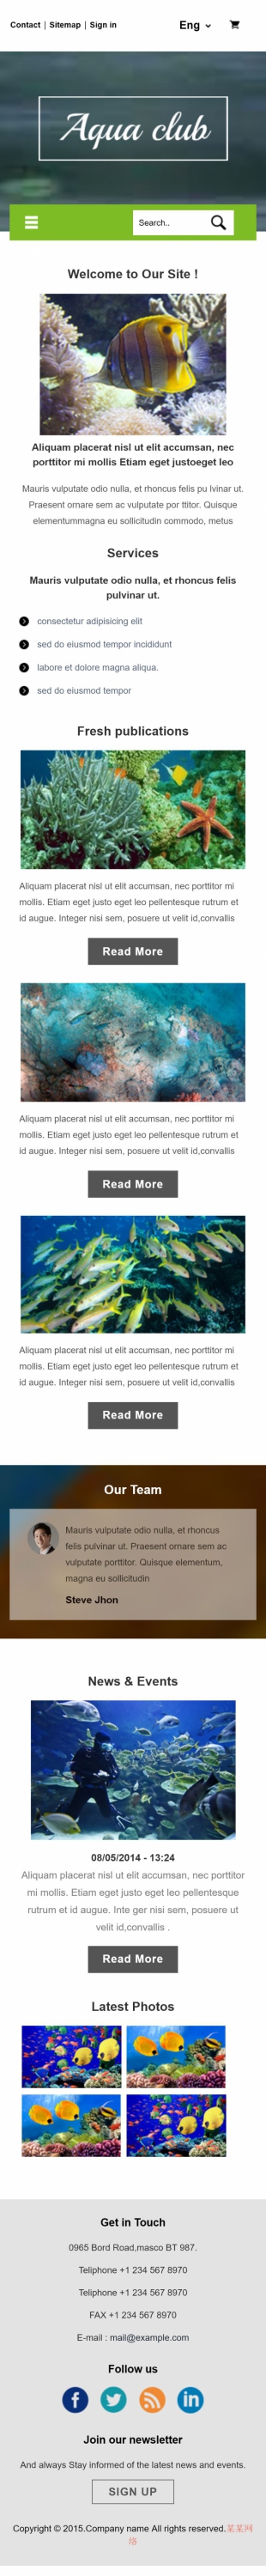 多语言热带鱼类商城英文模板网站手机图片